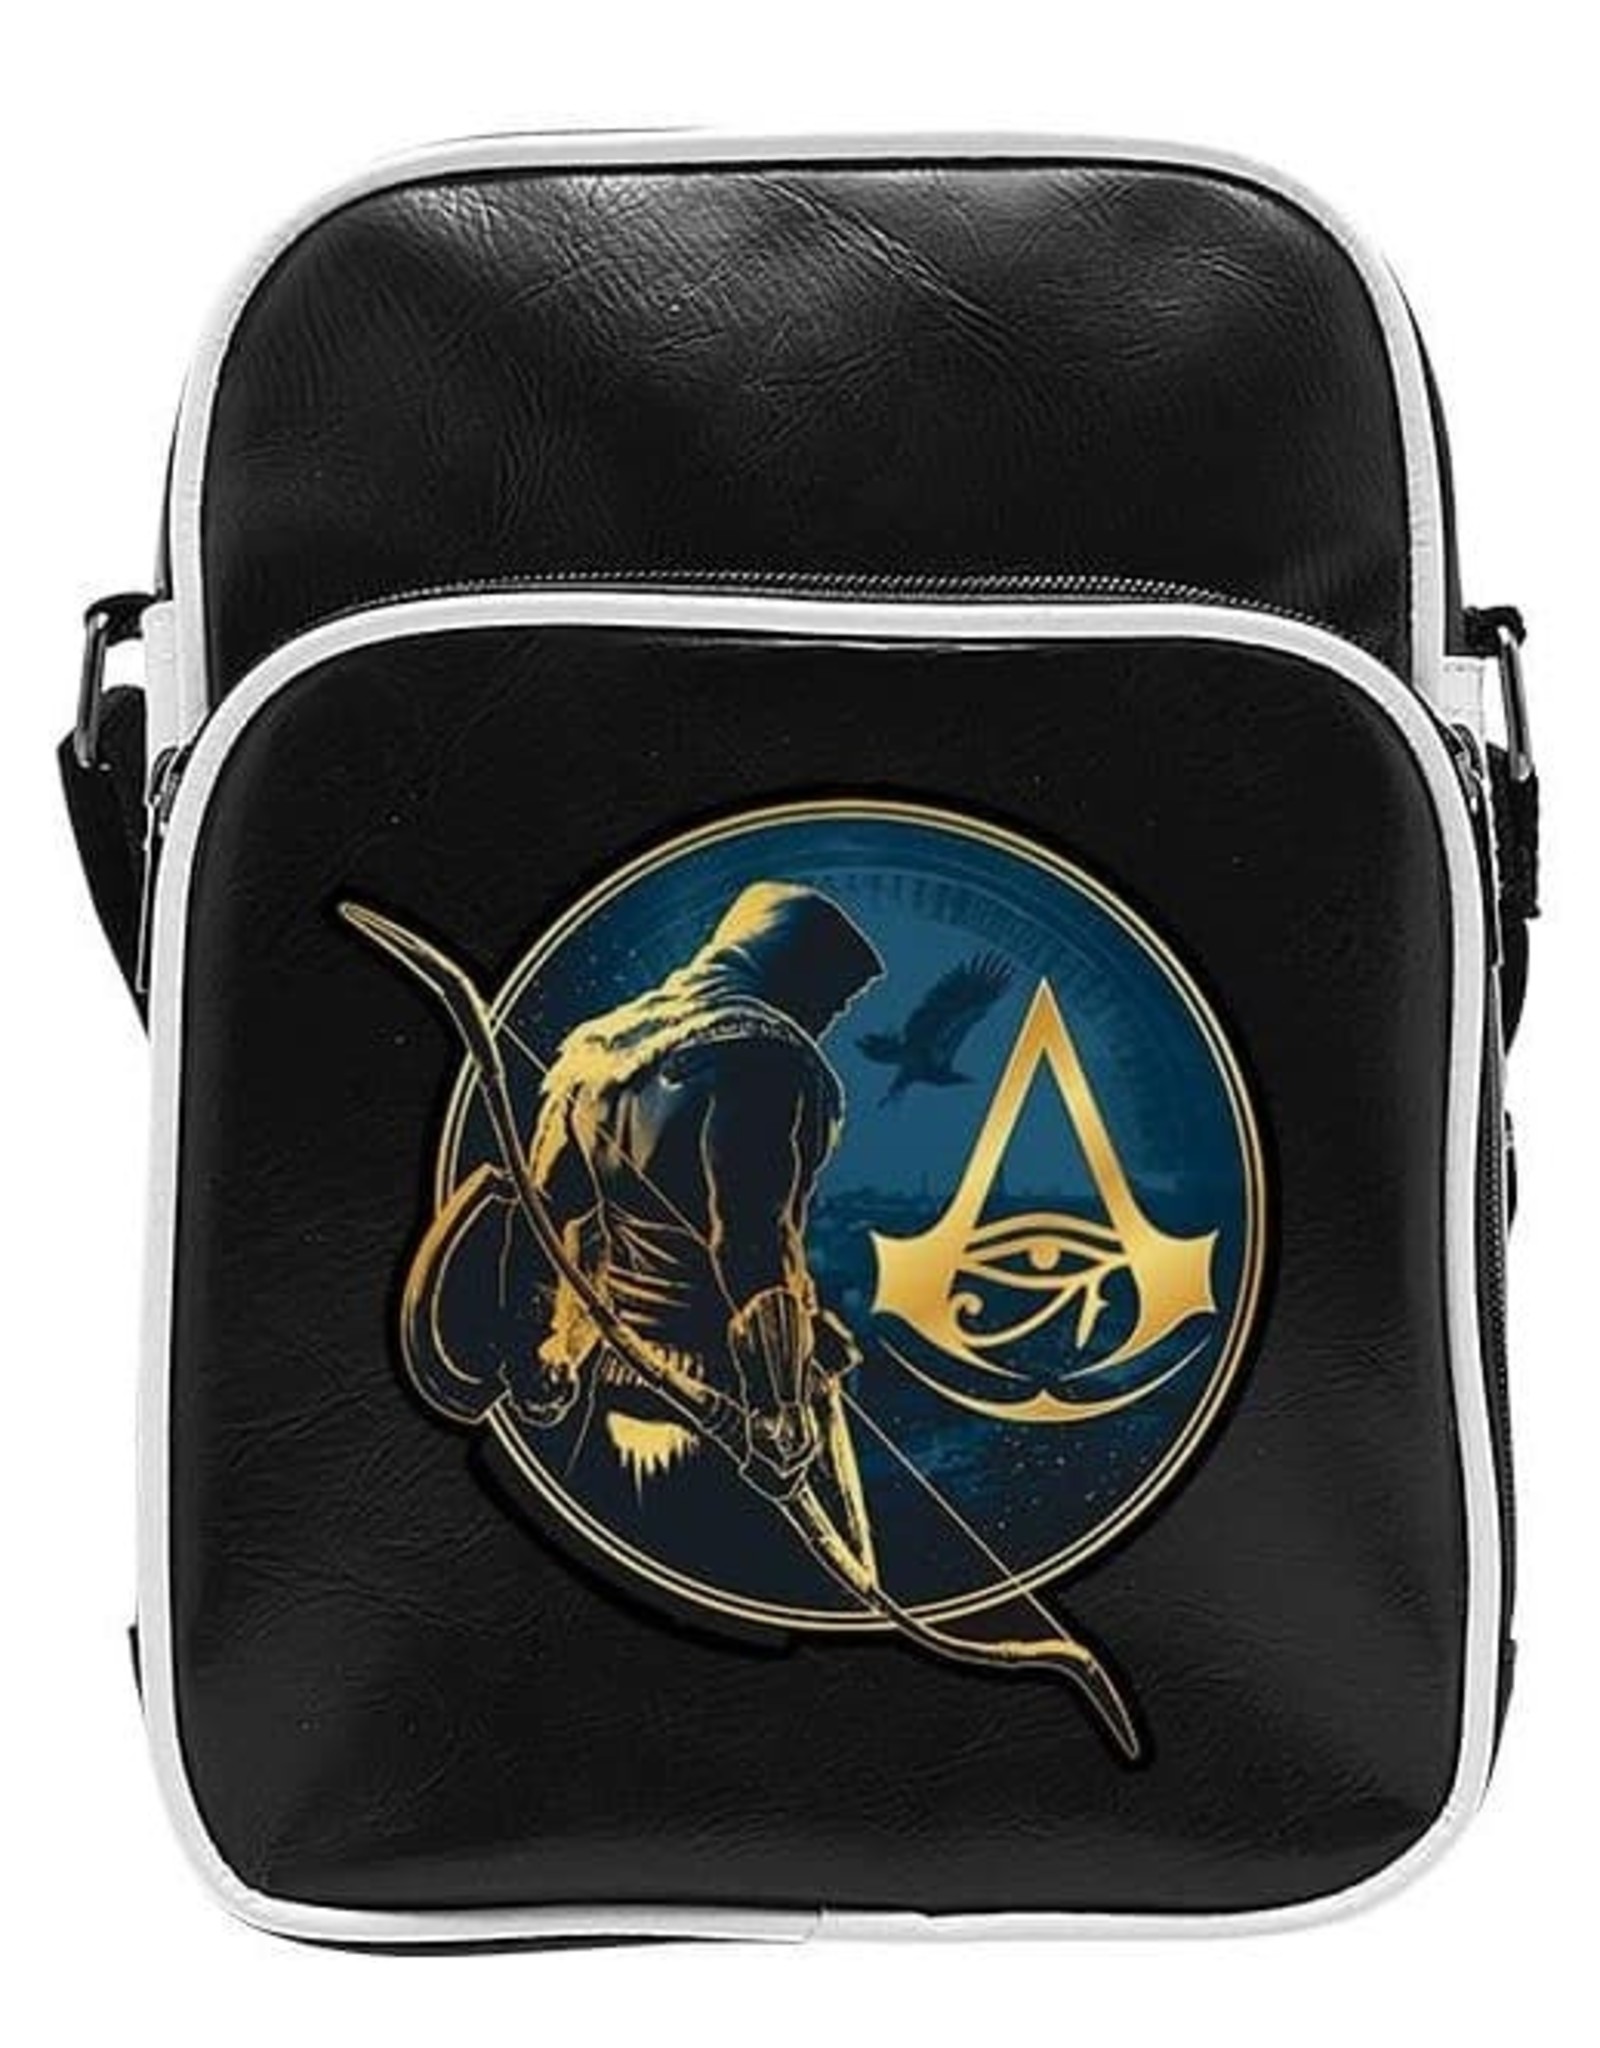 Assassins Creed Merchandise bags - Assassin's Creed Origins Shoulder bag